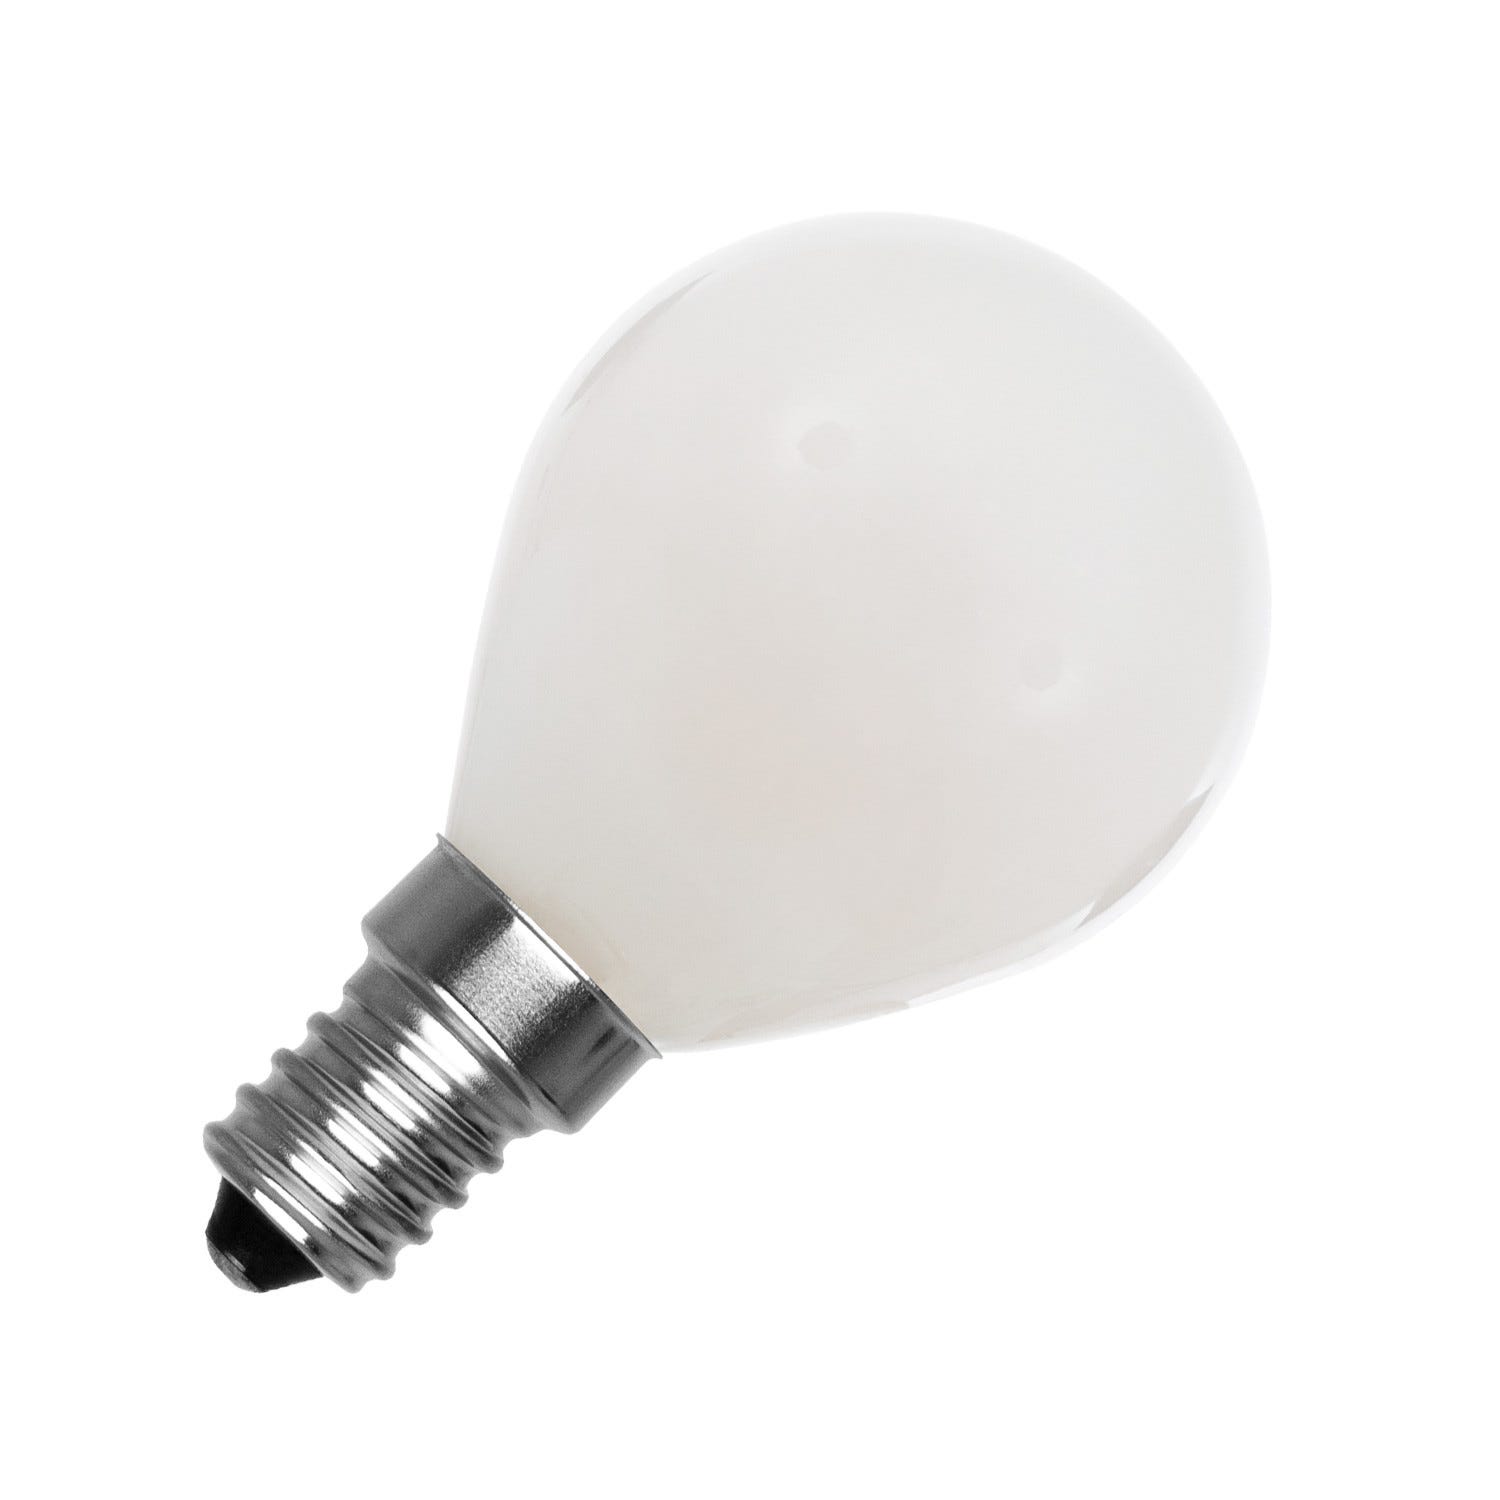 Ampoule LED E14 r50 6W 450lm ra80 ac 6000k blanc froid professionnelle